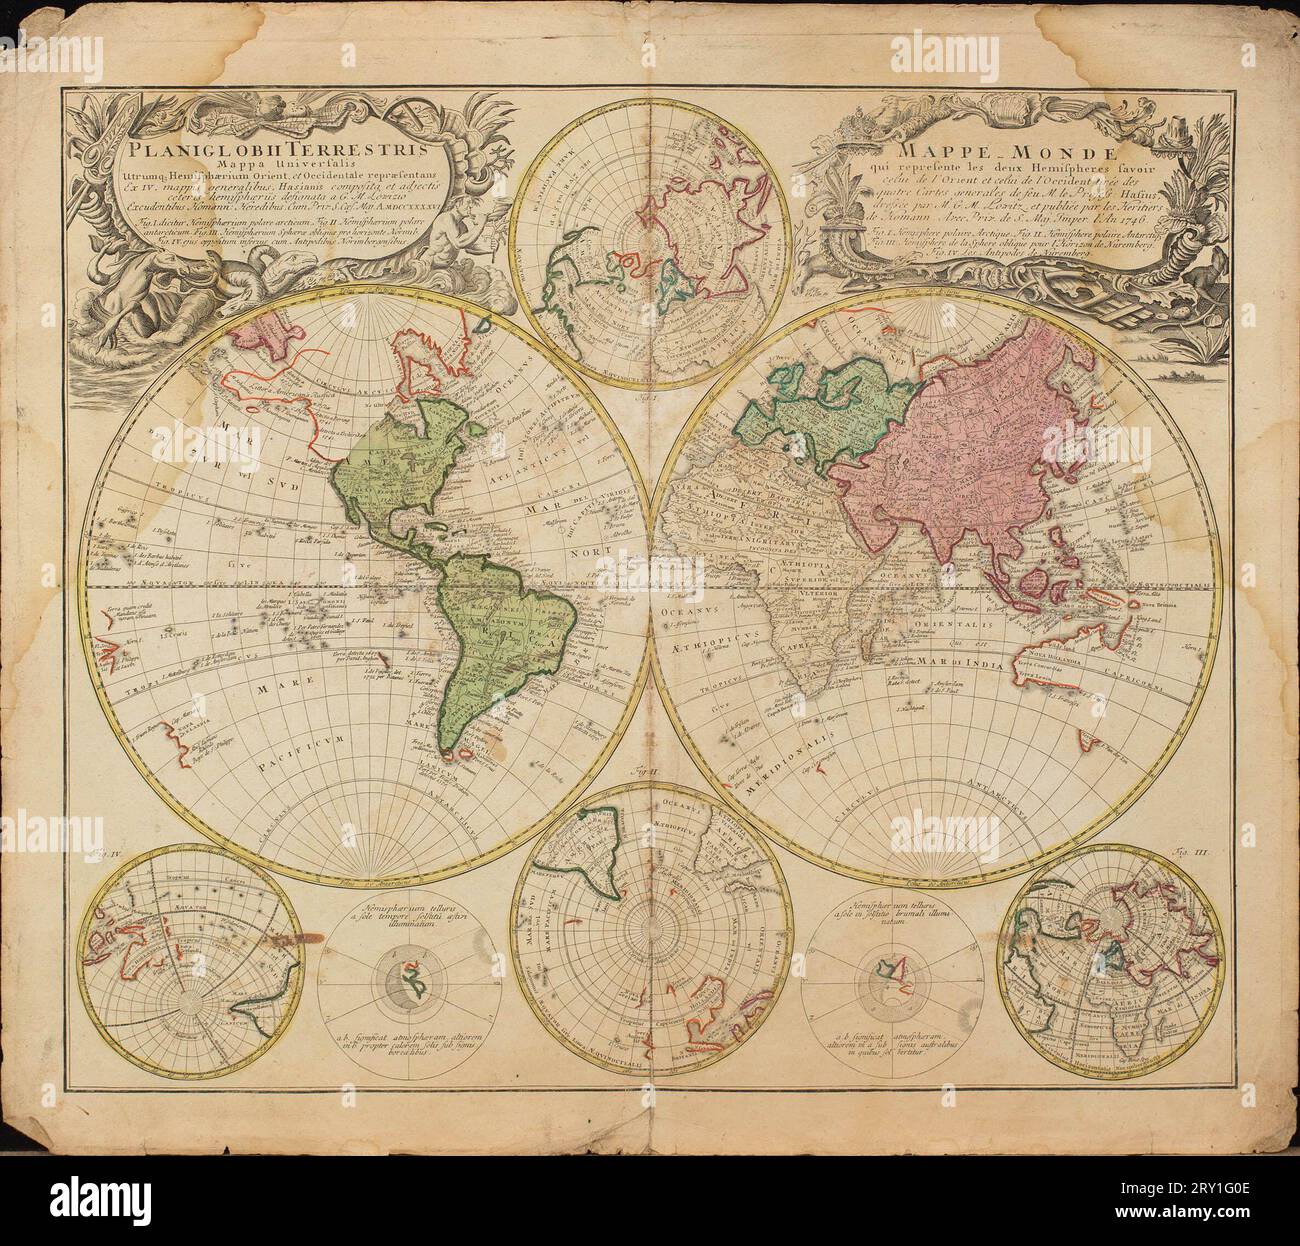 France - Atlas & cartes - Encyclopædia Universalis